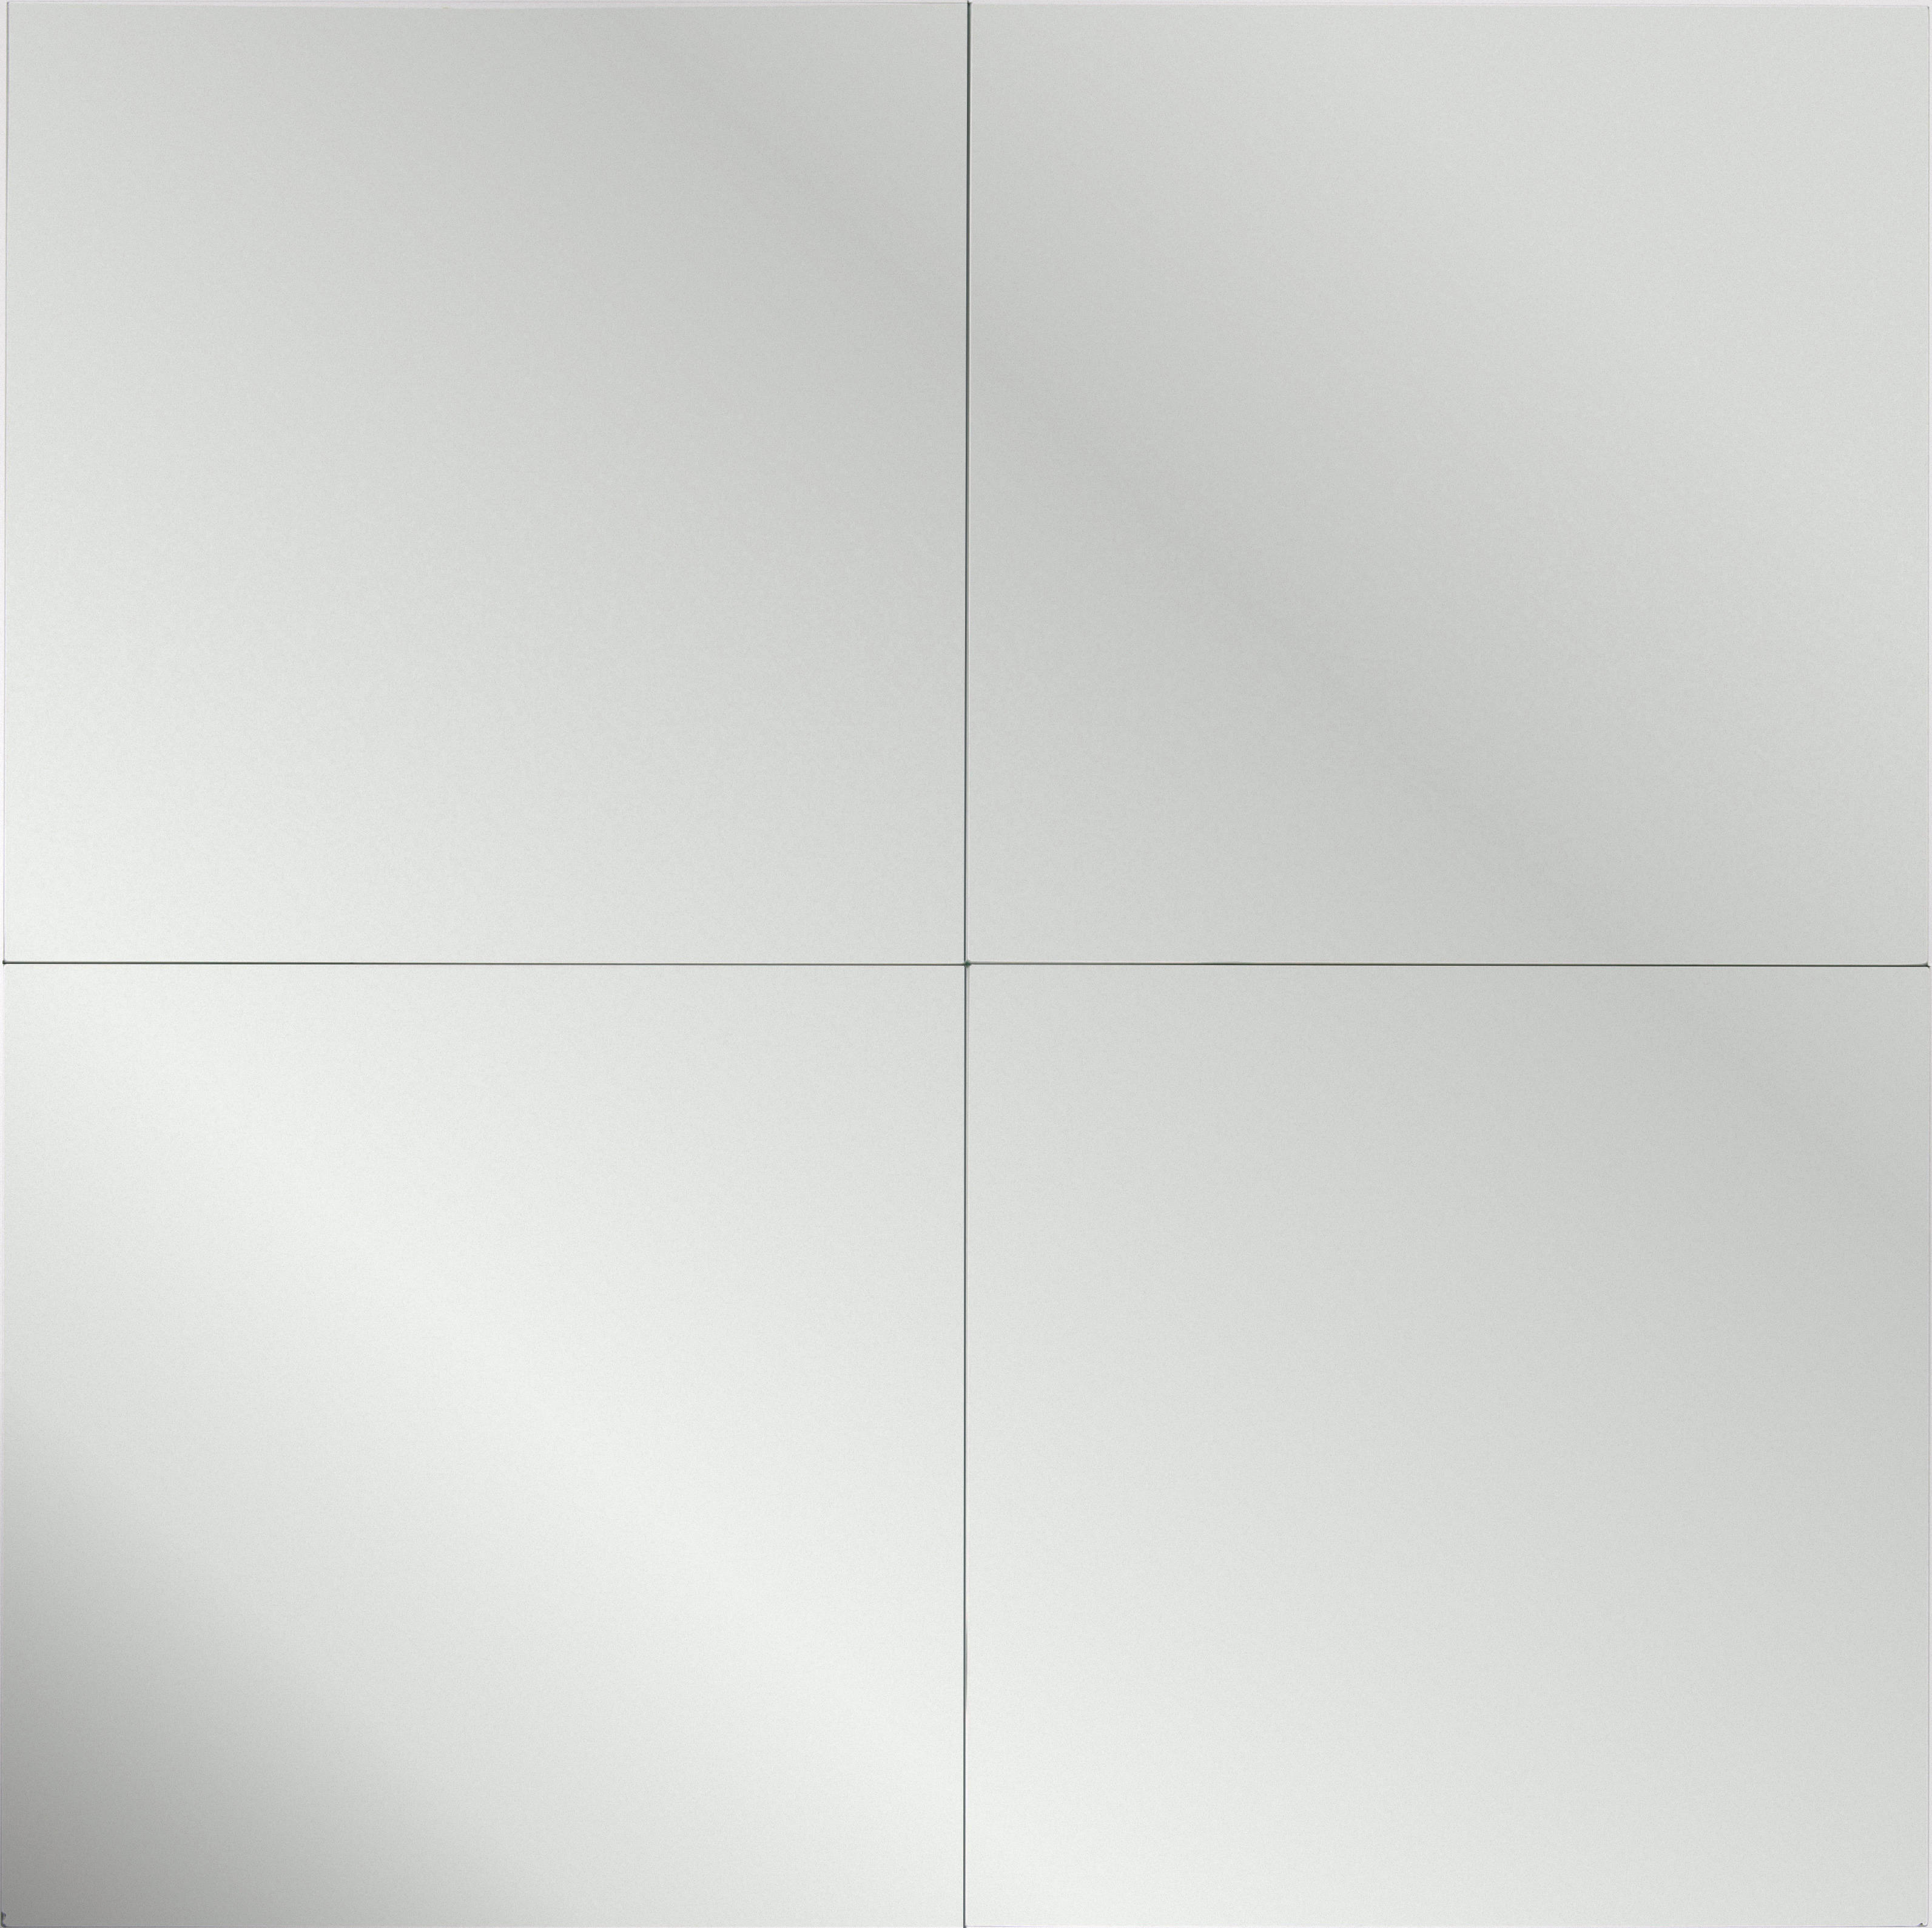 Boxxx NÁSTĚNNÉ ZRCADLO 30/30/0,3 cm - barvy stříbra